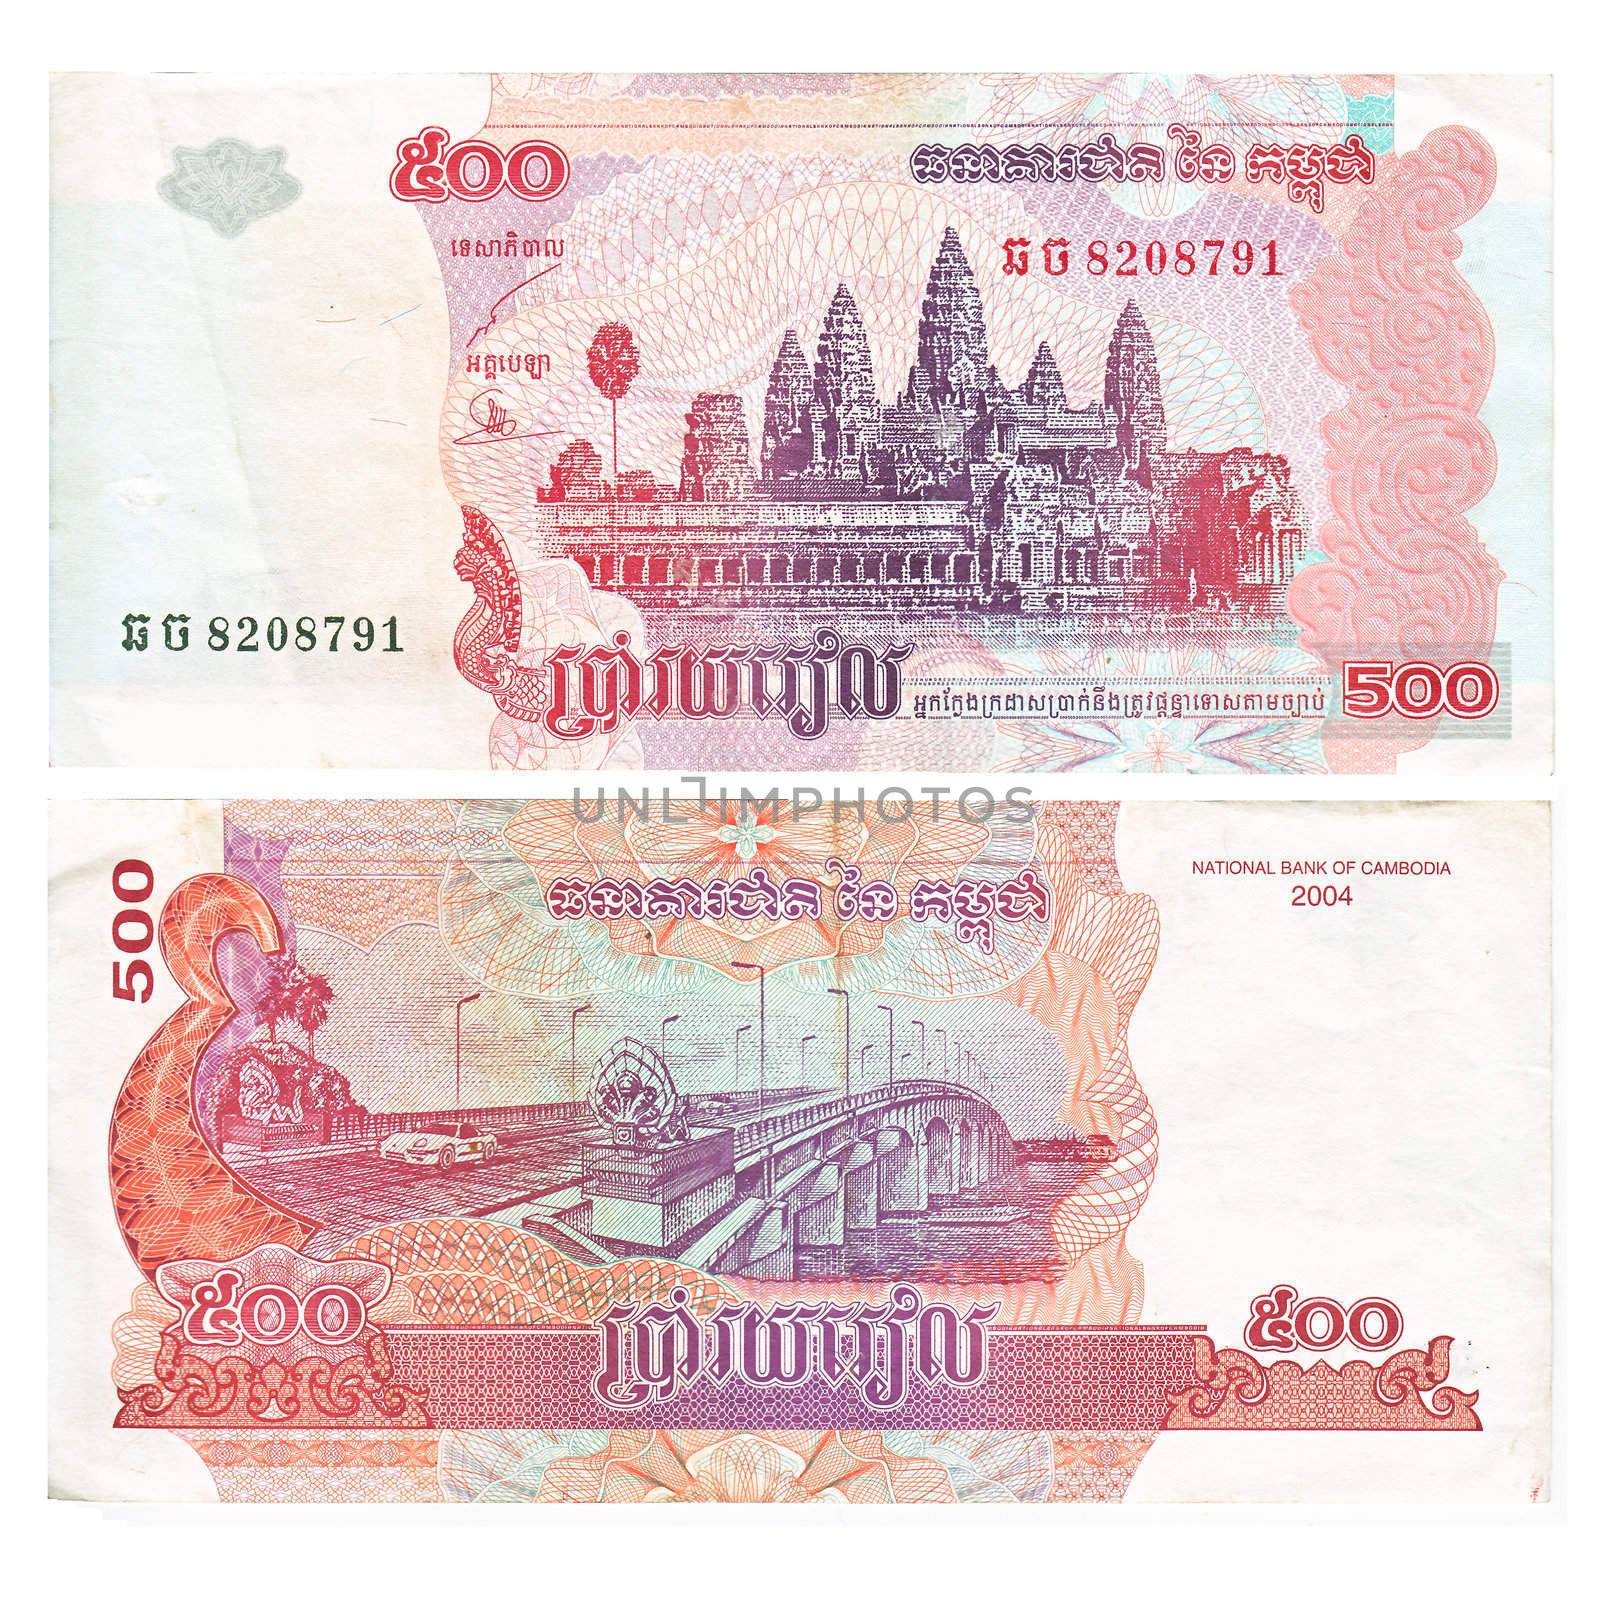 Cambodia bill by Lirch